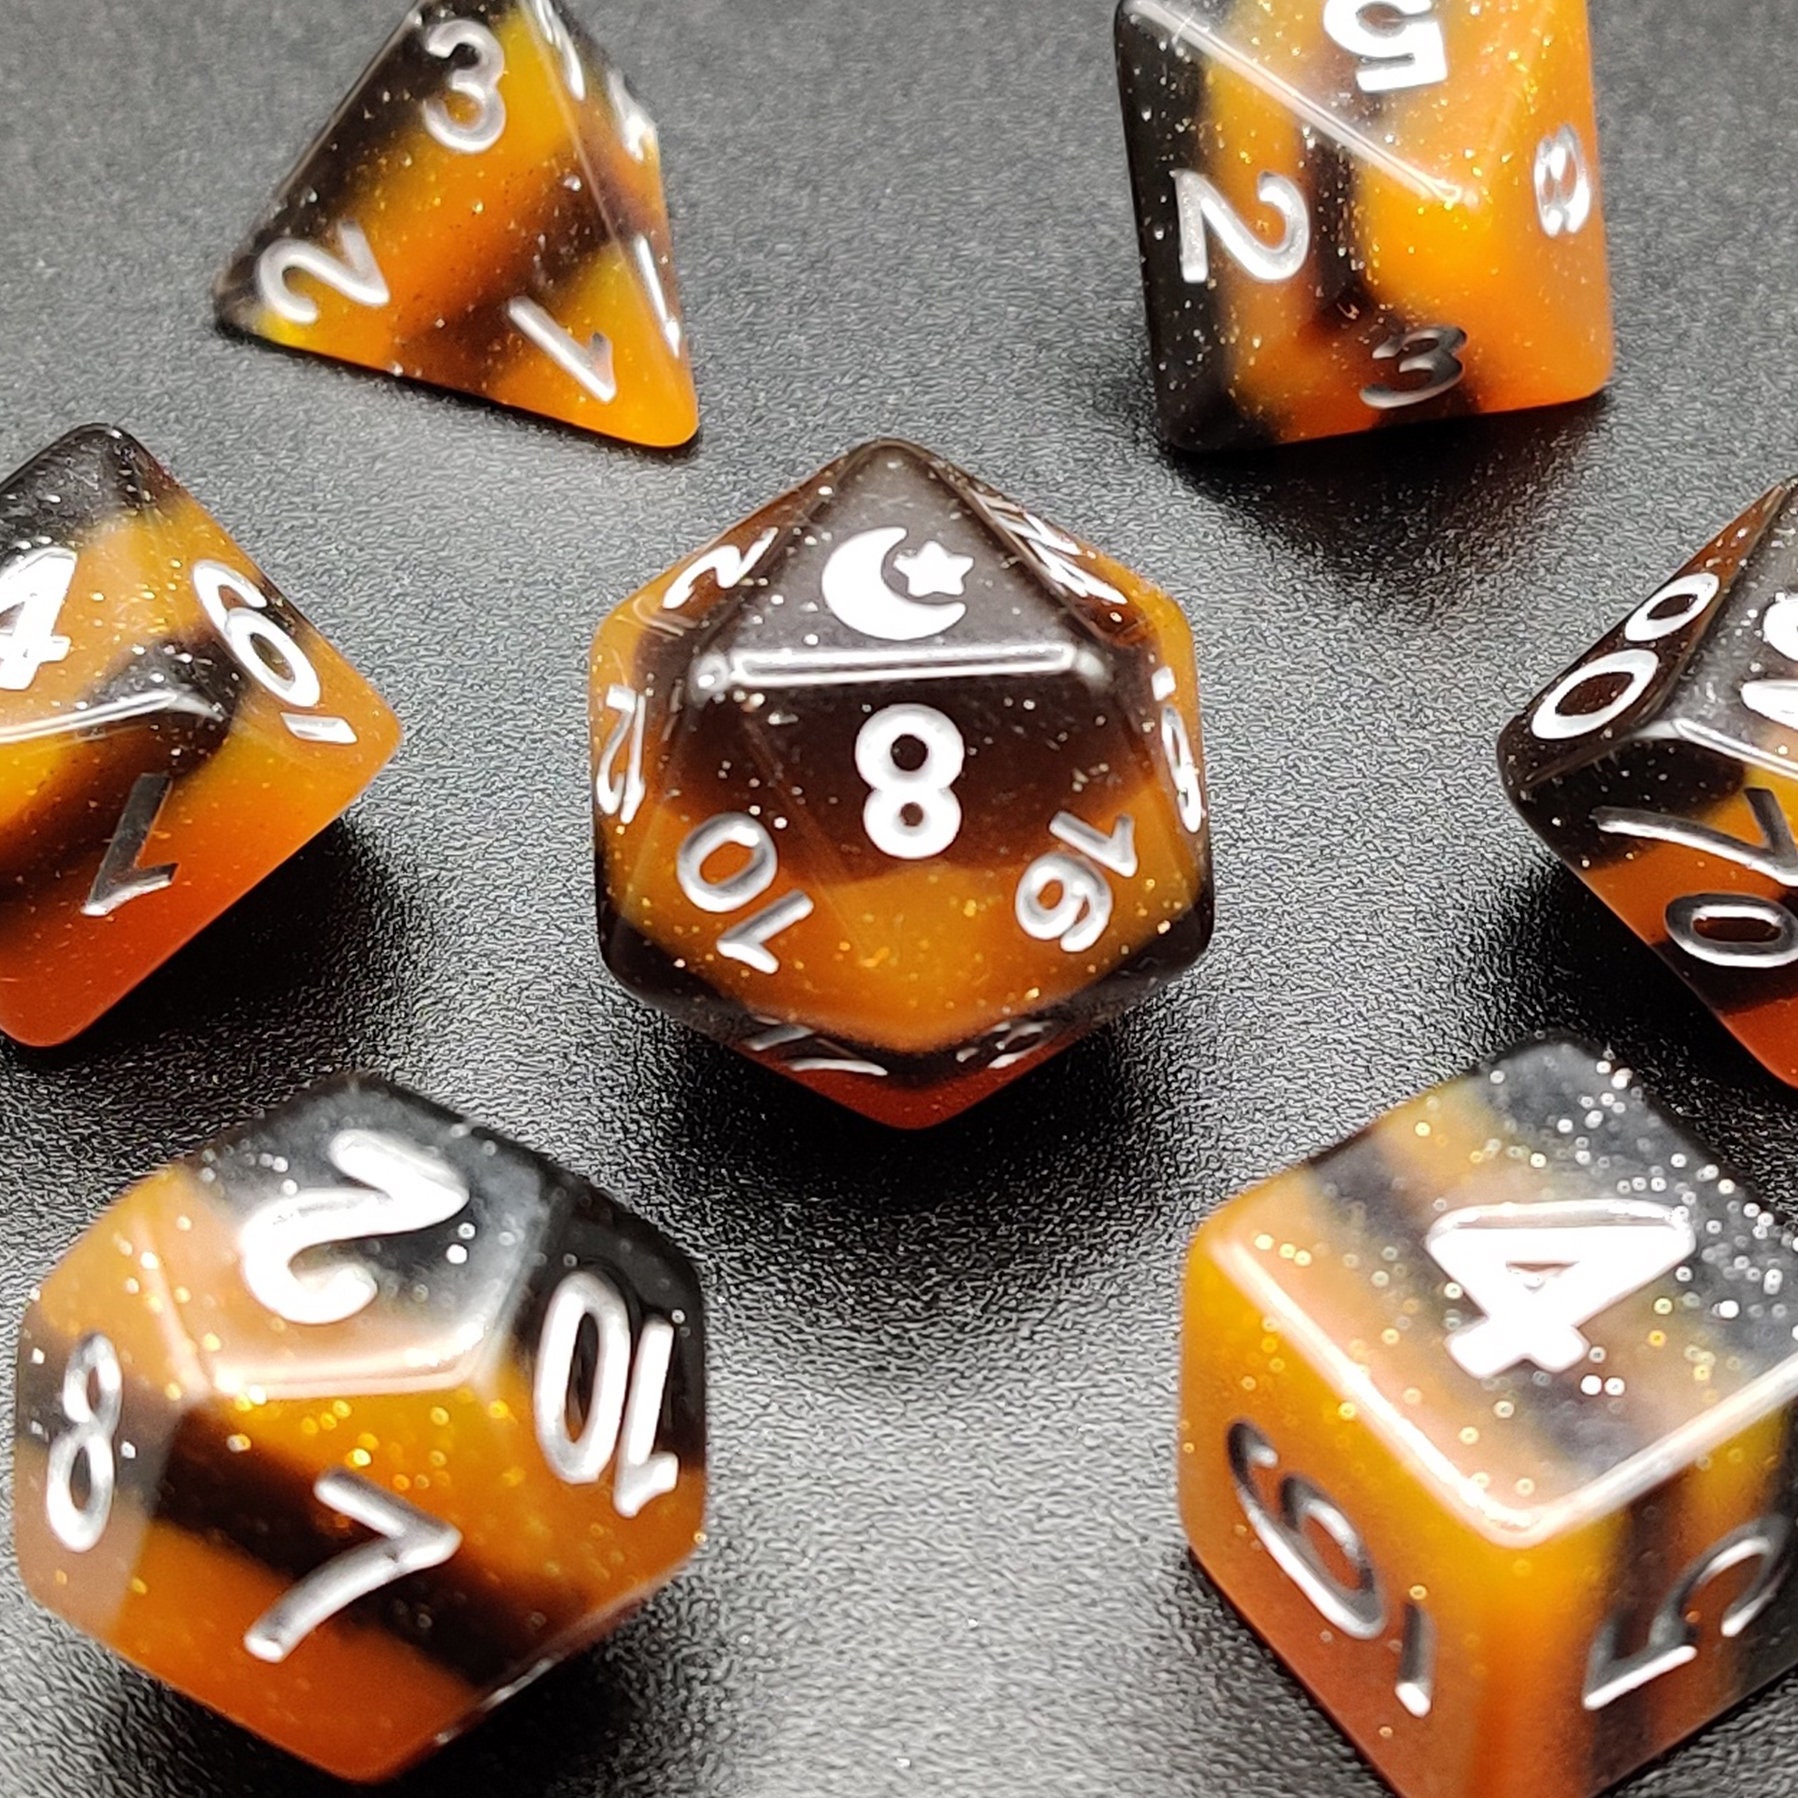 Chessex Dice. Gemini Blue-Orange/white d4 dice